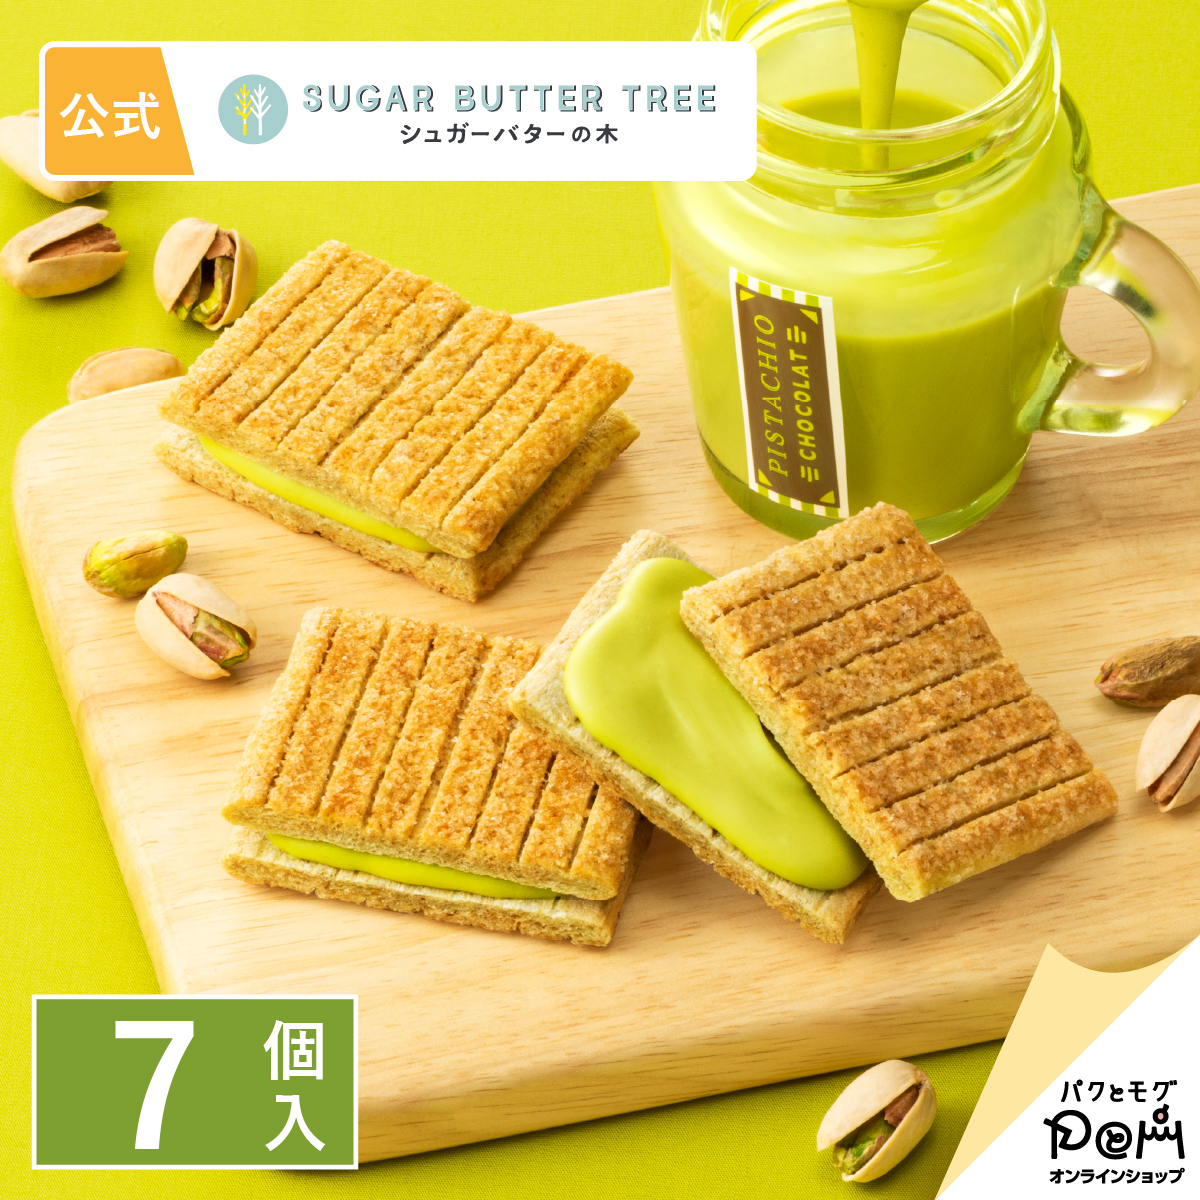 東京特產 砂糖奶油樹夾心餅 開心果 7個入(160g) Sugar Butter Tree 砂糖奶油樹 日本必買 | 日本樂天熱銷